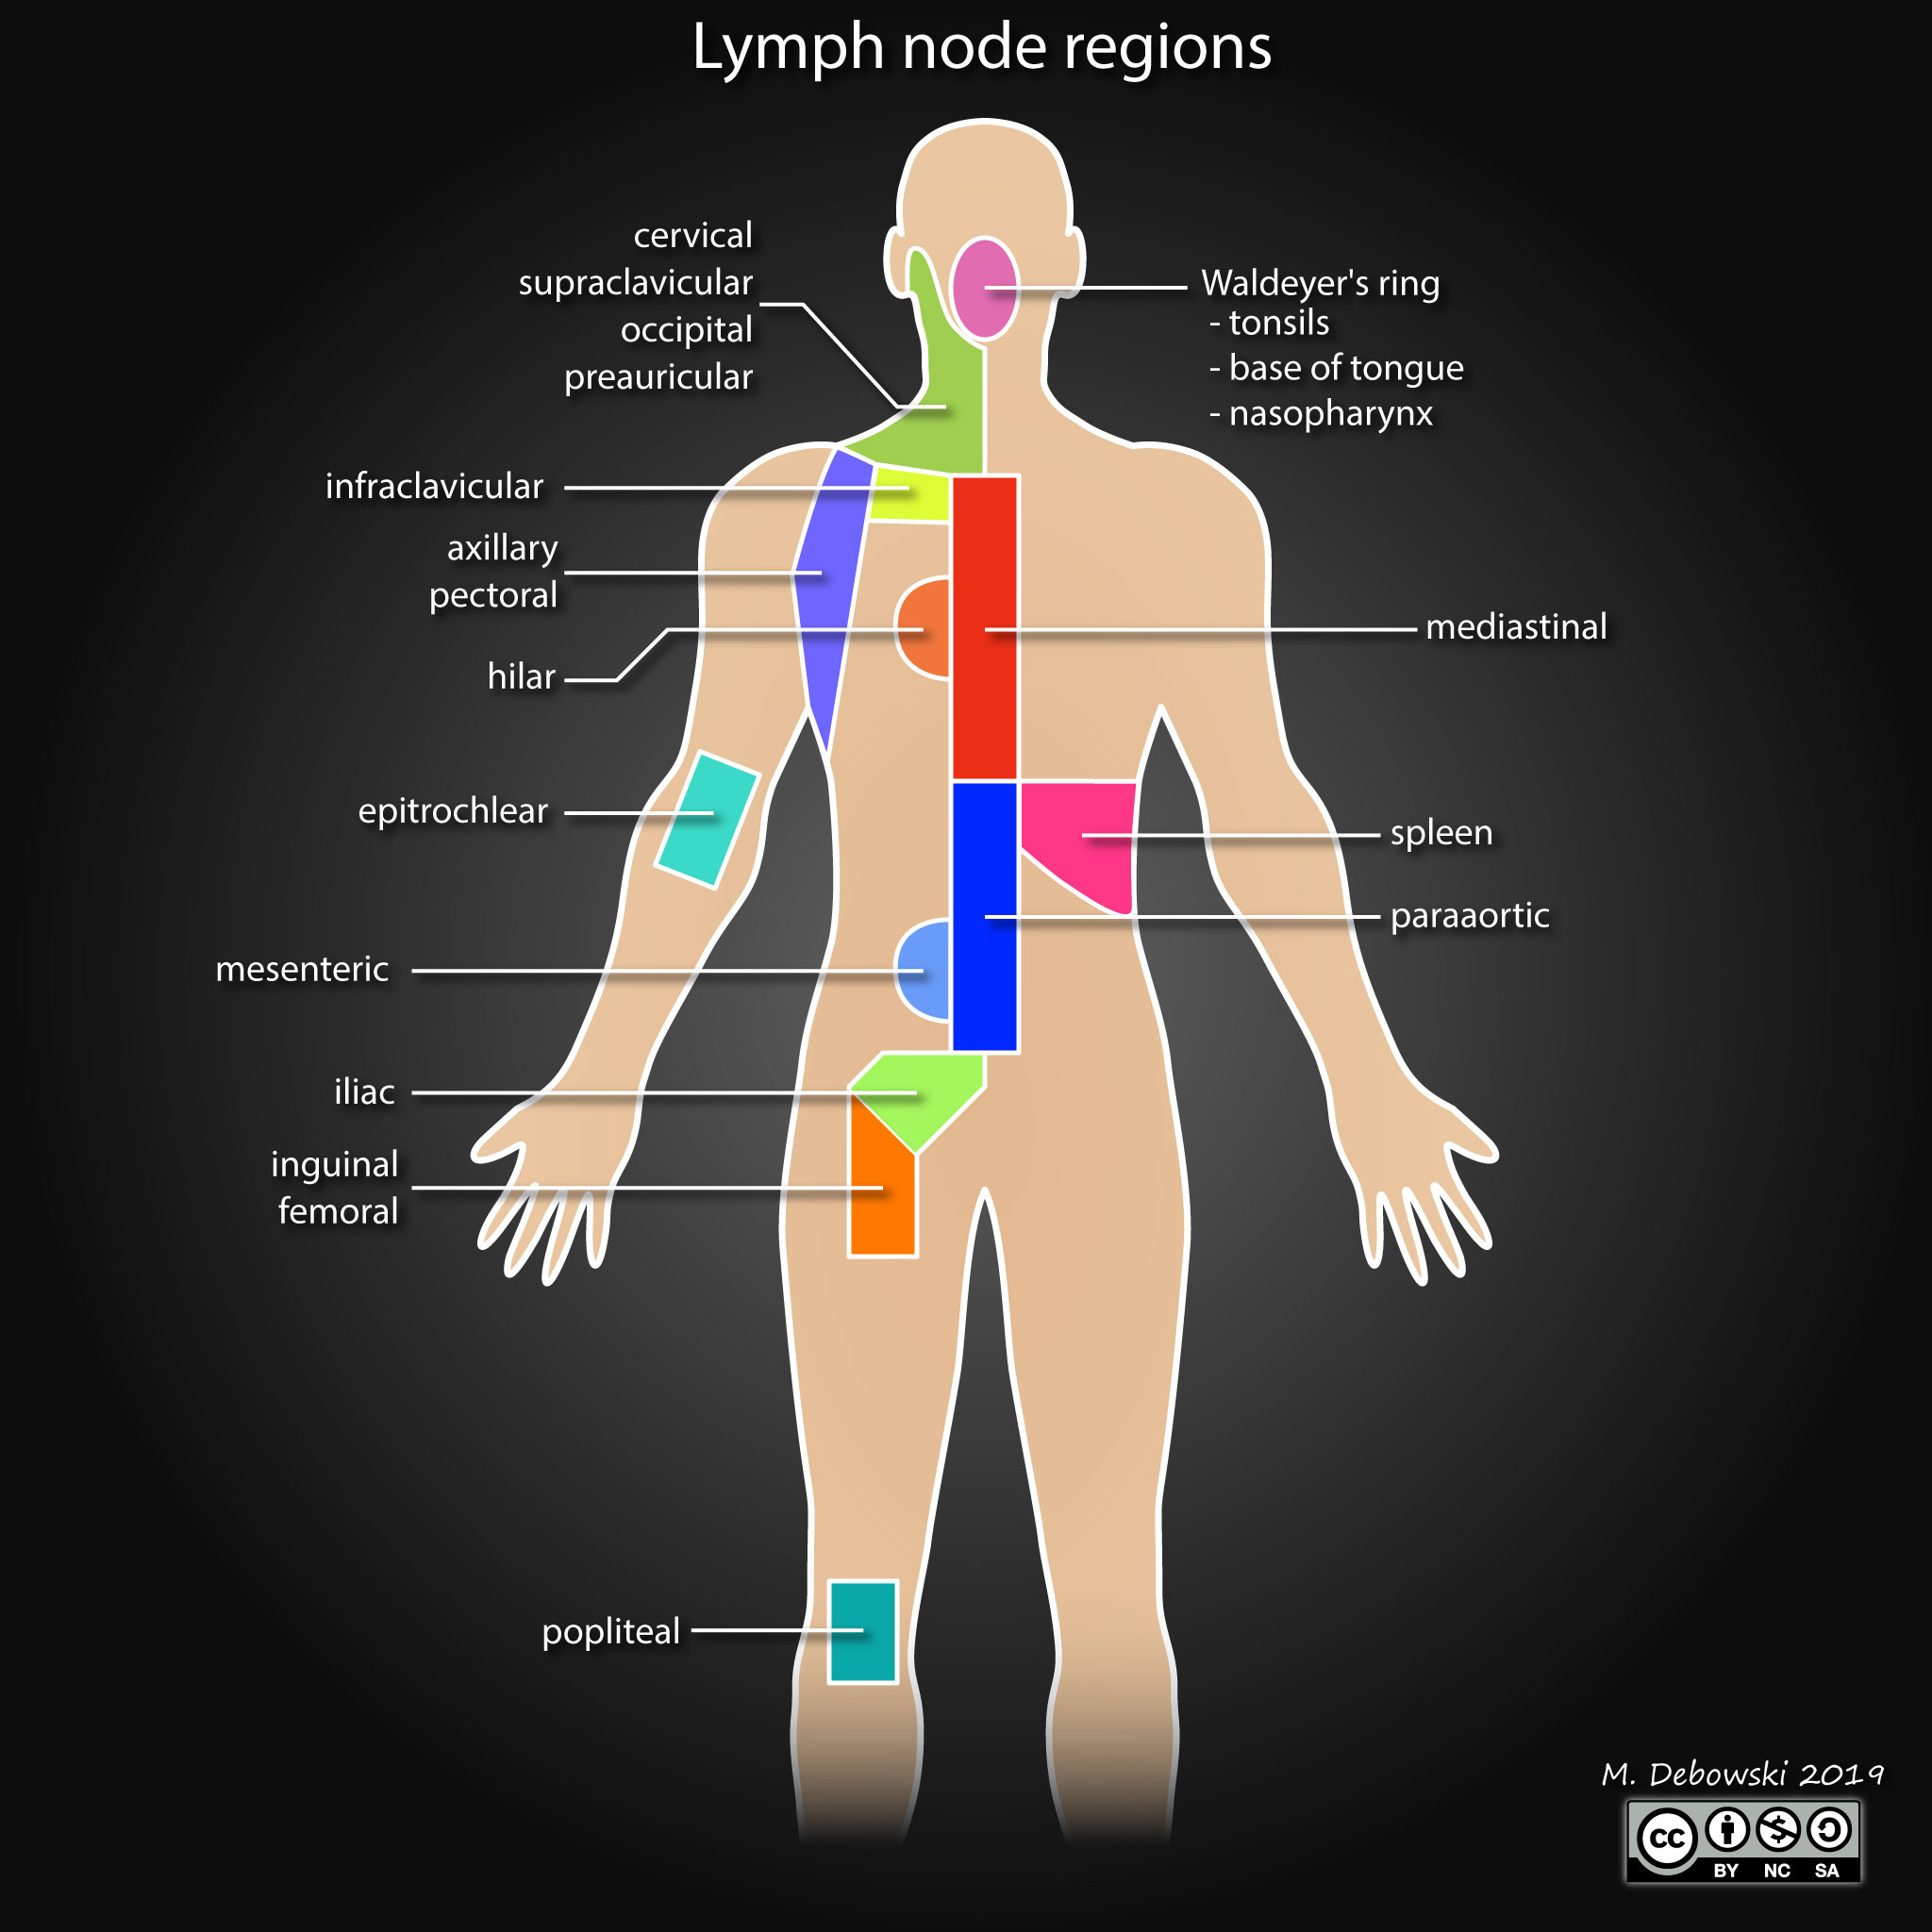 lymph-node-regions-illustration.jpg